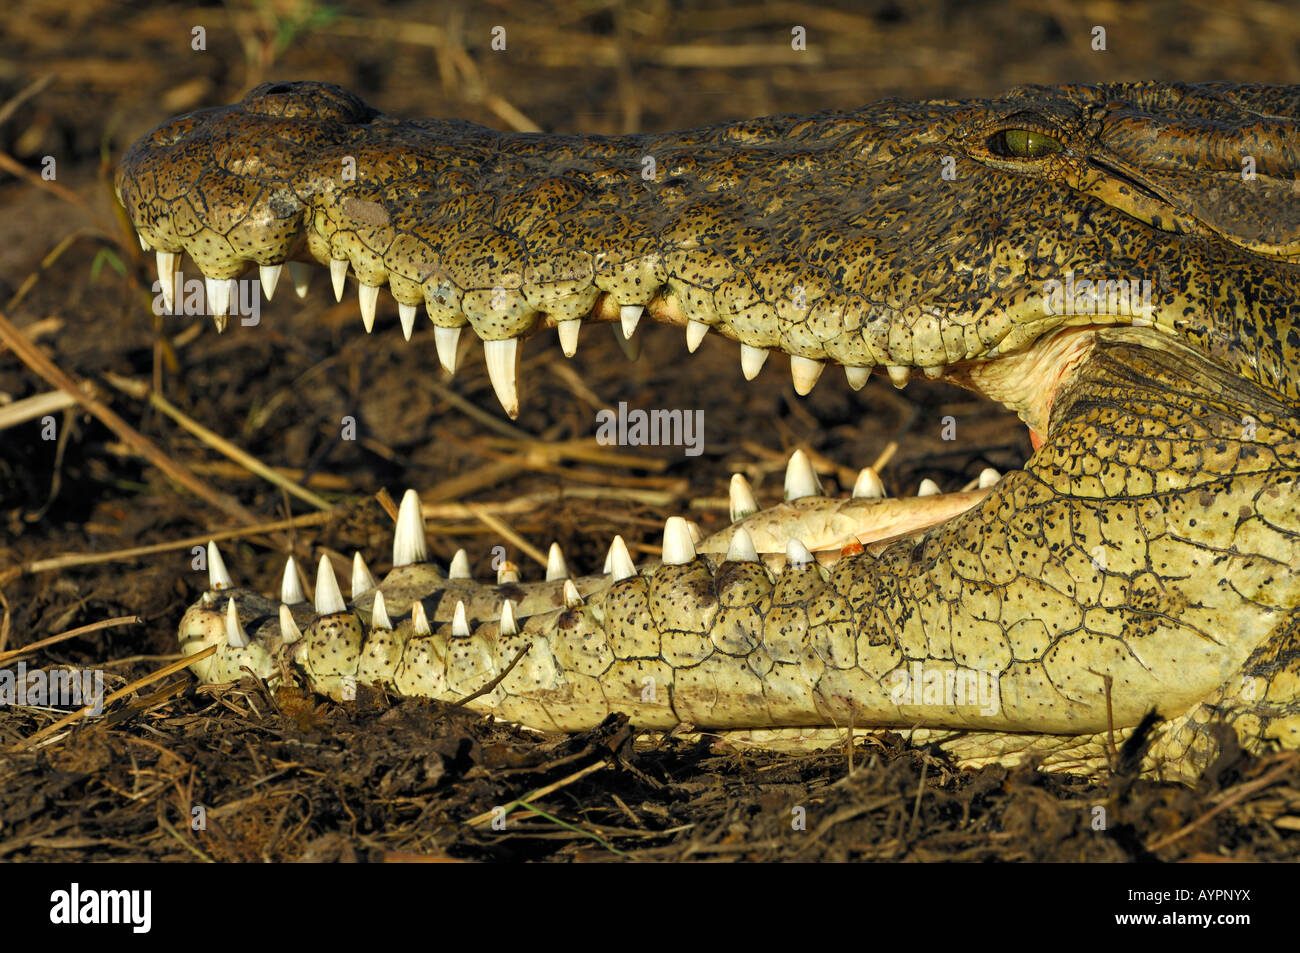 Portrait of a Nile Crocodile (Crocodylus niloticus), sunbathing, Chobe National Park, Botswana, Africa Stock Photo